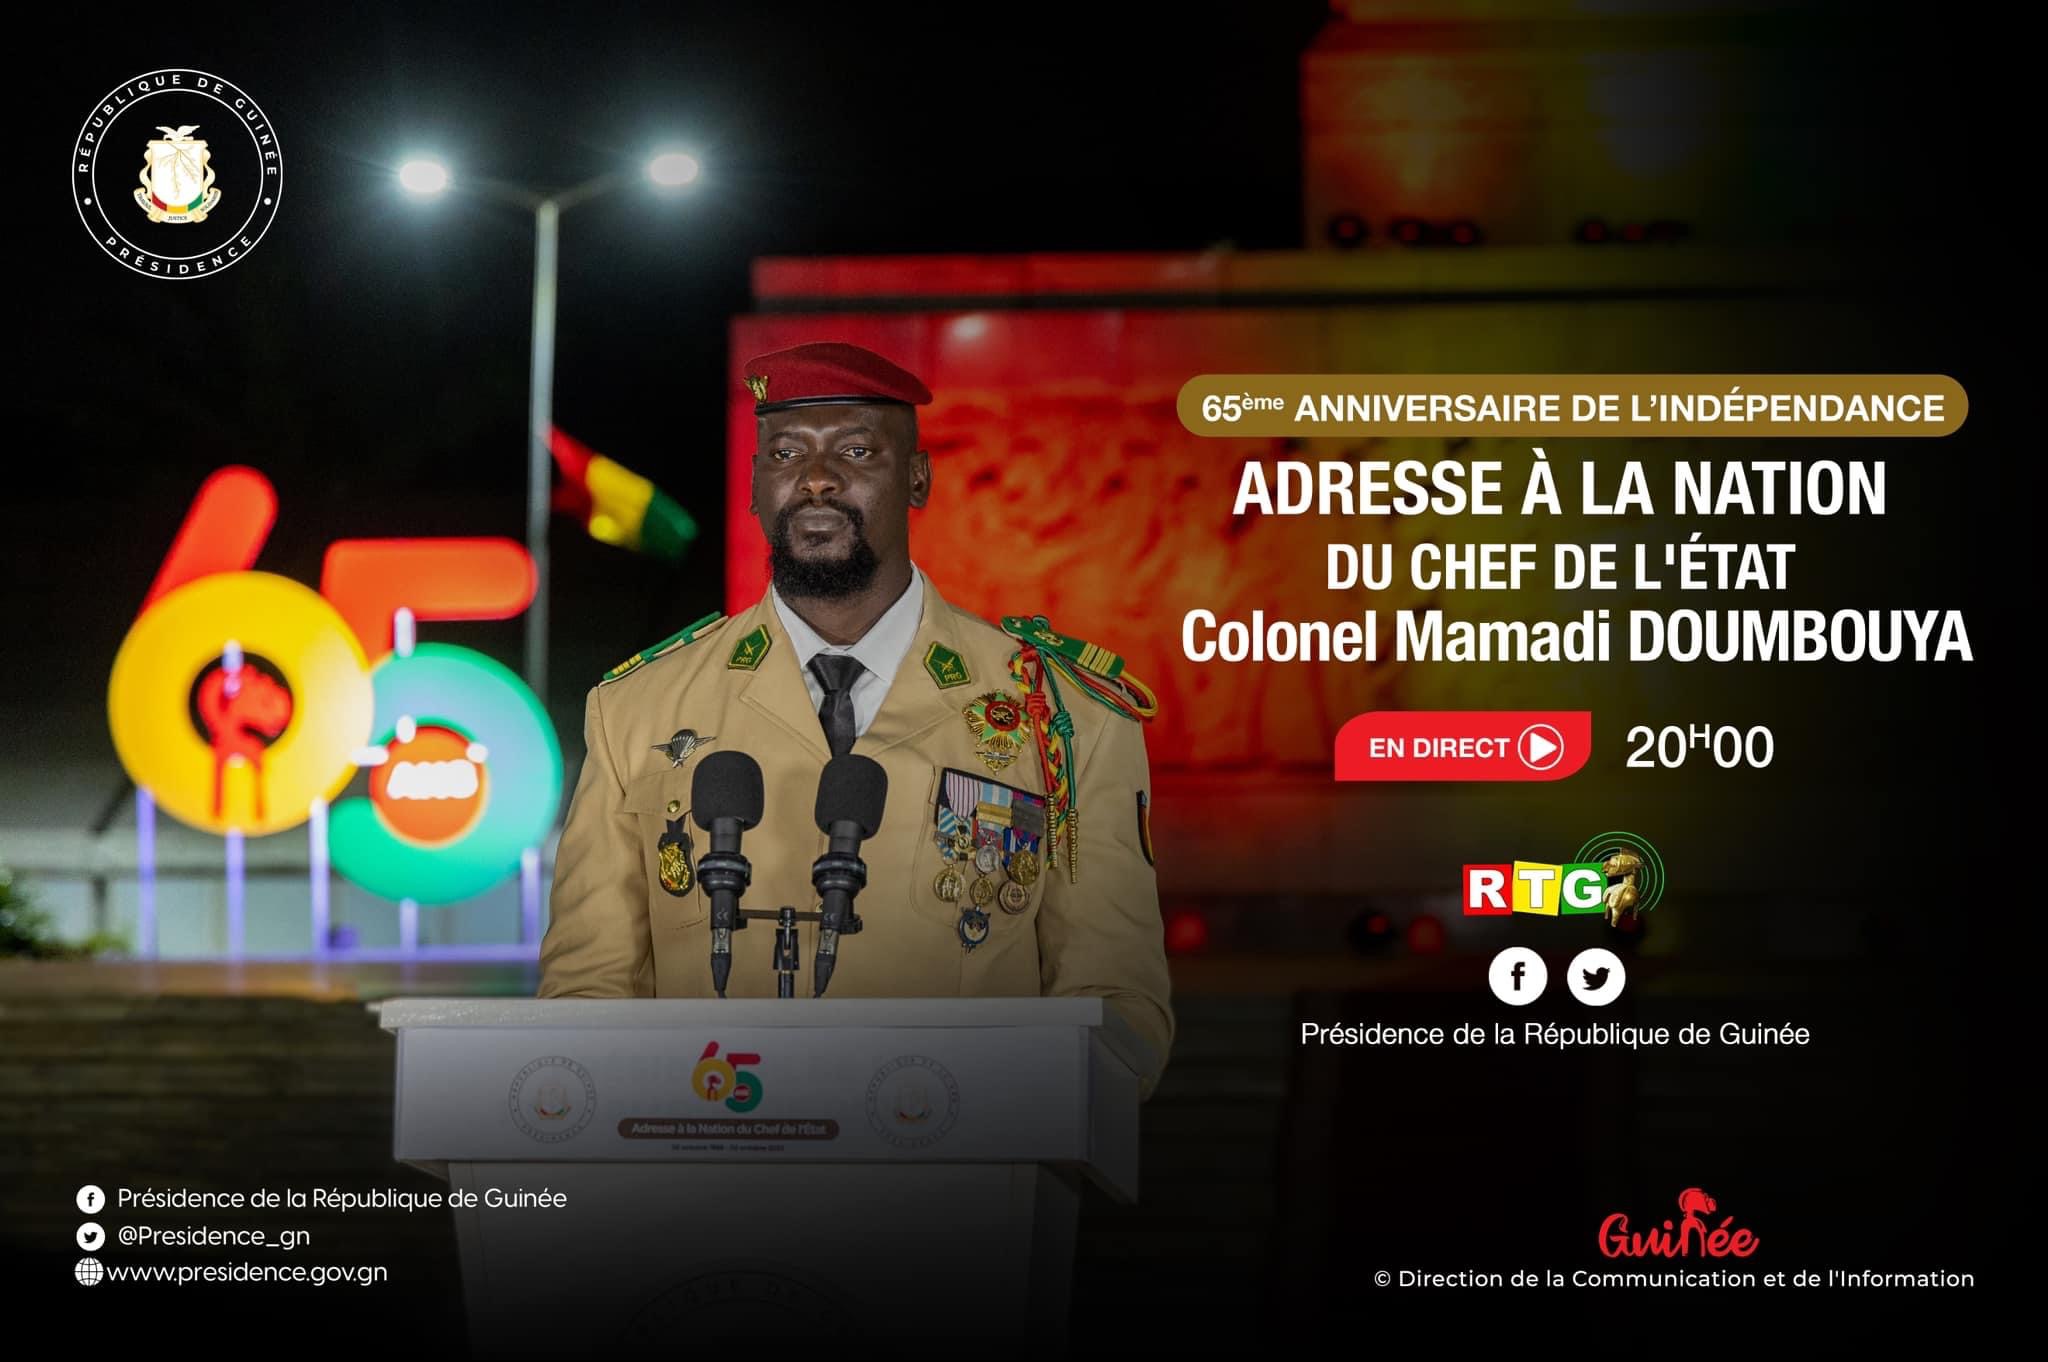 𝟔𝟓𝐞̀𝐦𝐞 𝐀𝐍𝐍𝐈𝐕𝐄𝐑𝐒𝐀𝐈𝐑𝐄 𝐃𝐄 𝐋𝐀 𝐅𝐄̂𝐓𝐄 𝐃𝐄 𝐋’𝐈𝐍𝐃𝐄́𝐏𝐄𝐍𝐃𝐀𝐍𝐂𝐄  🔹 ADRESSE À LA NATION DU CHEF DE L’ÉTAT, Colonel Président Mamadi Doumbouya